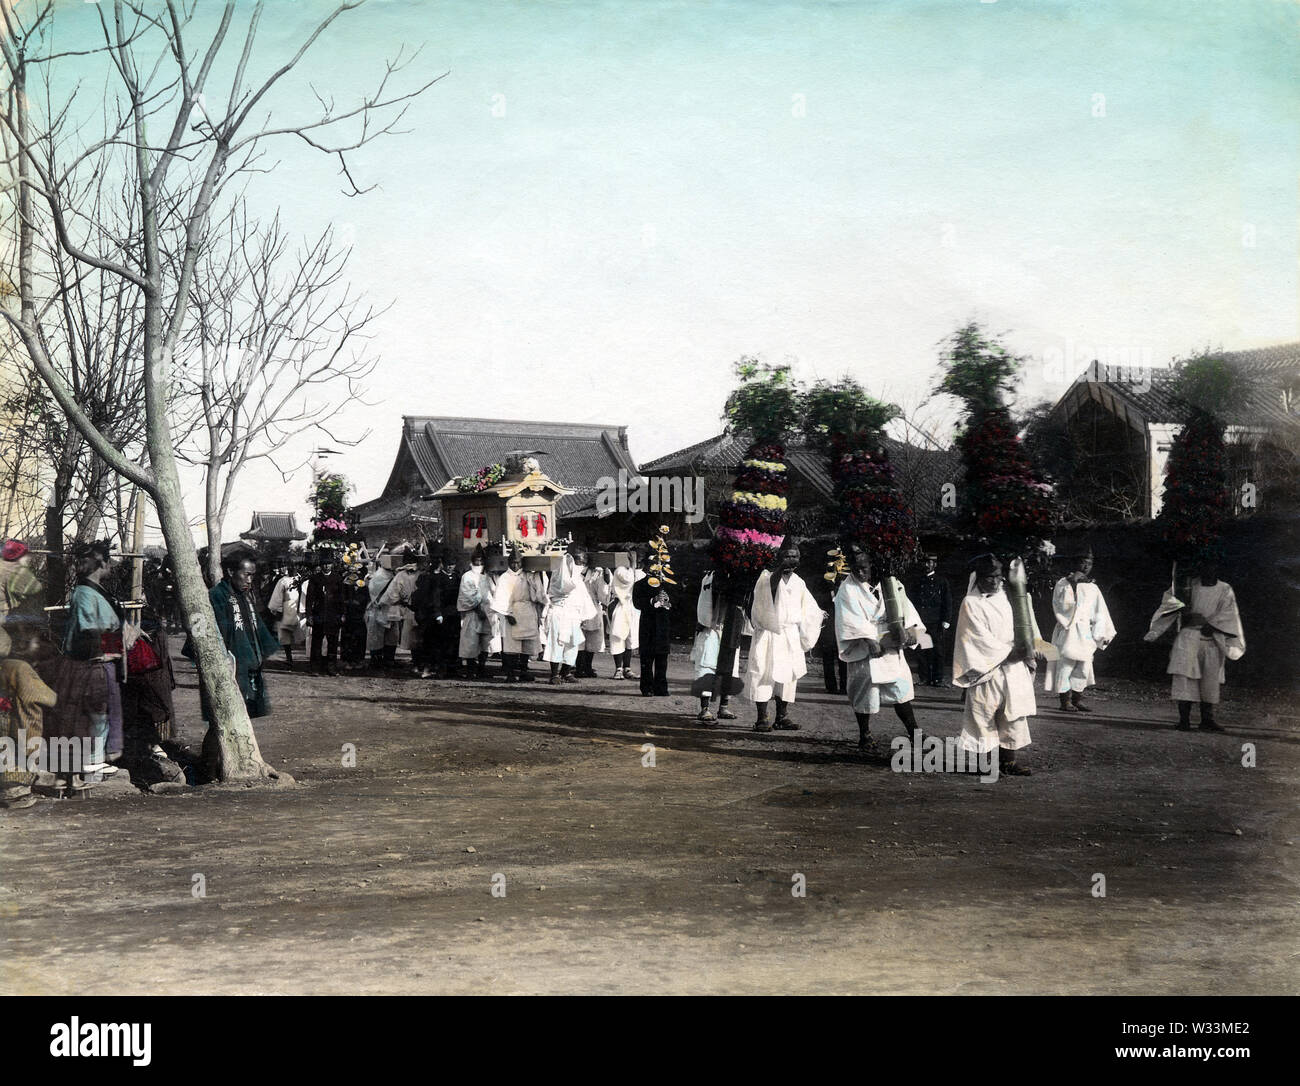 [1890s Japan - Japanische Trauerzug] - Trauerzug auf der Straße. 19 Vintage albumen Foto. Stockfoto